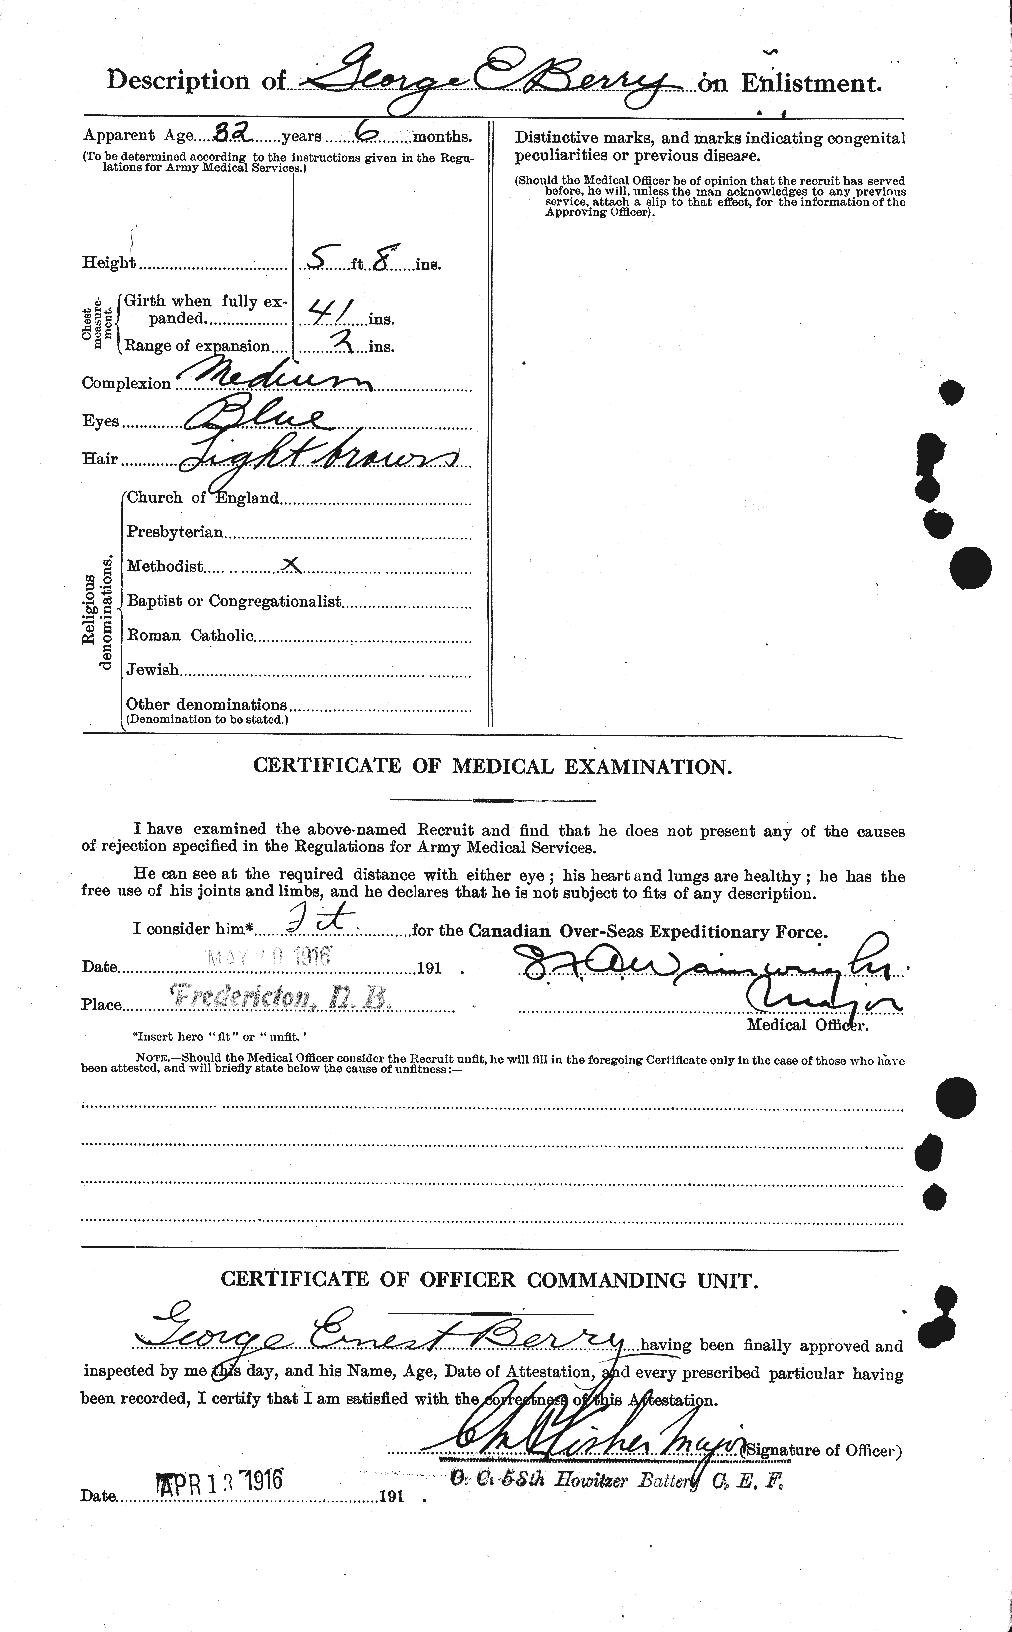 Dossiers du Personnel de la Première Guerre mondiale - CEC 240890b